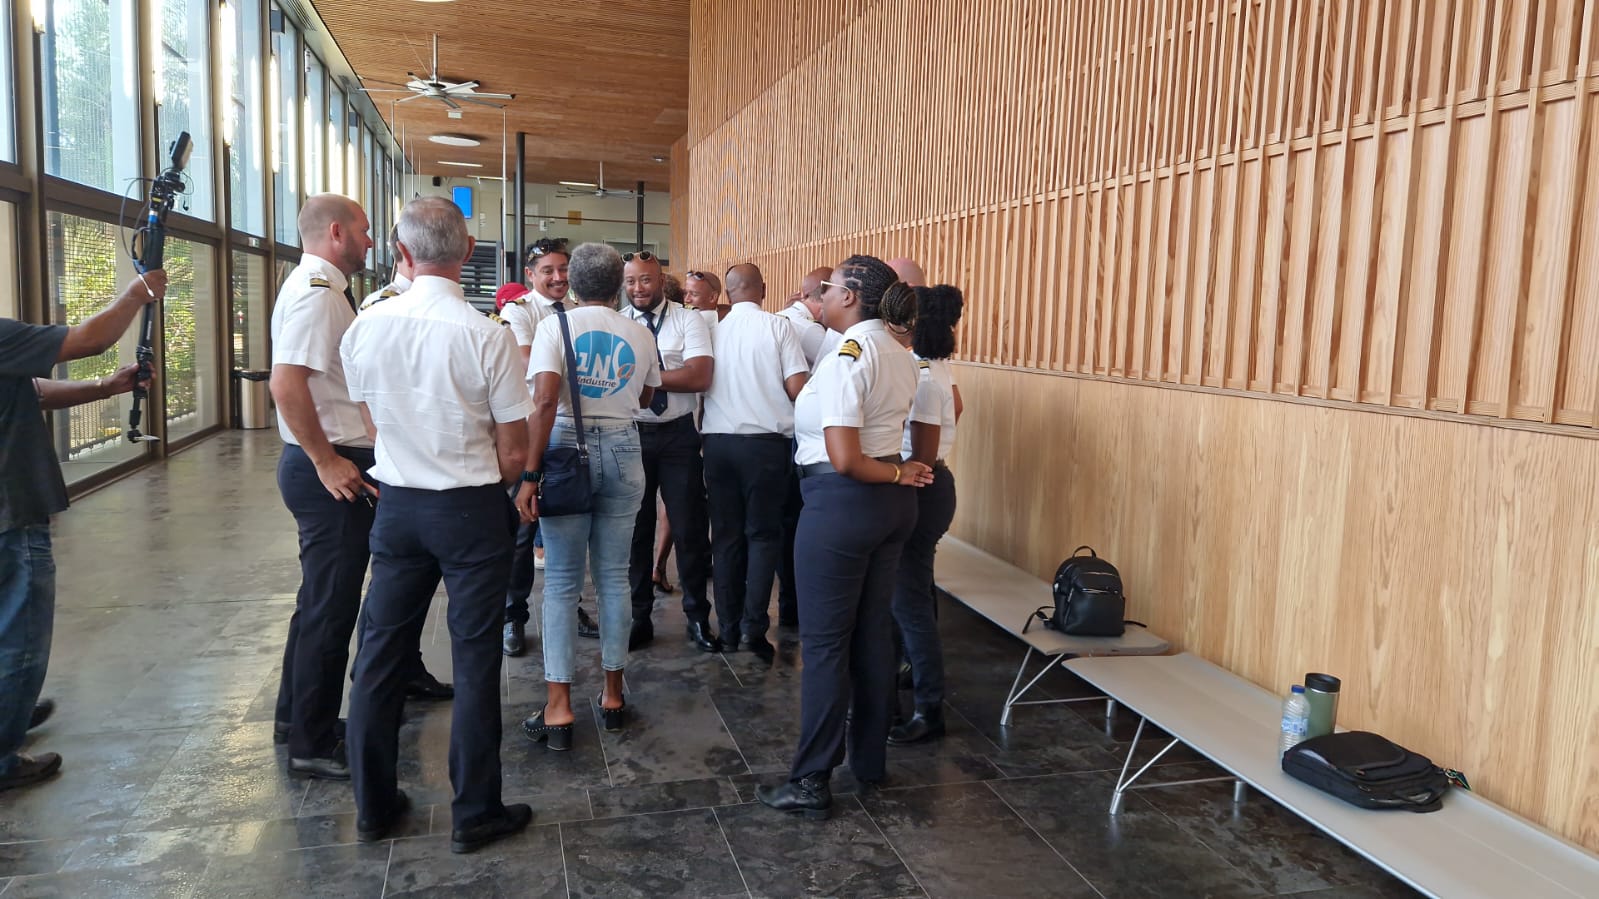     Air Antilles : la décision du tribunal attendue à 16 h, mouvement de grève suspendu

